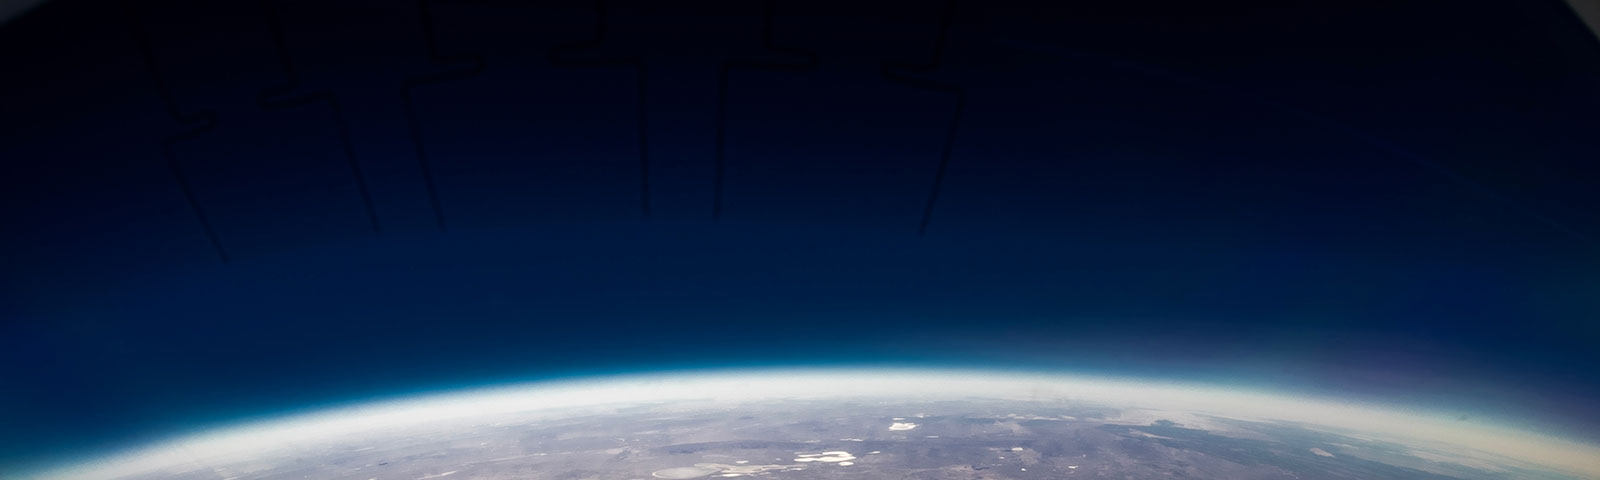 Earth from orbit